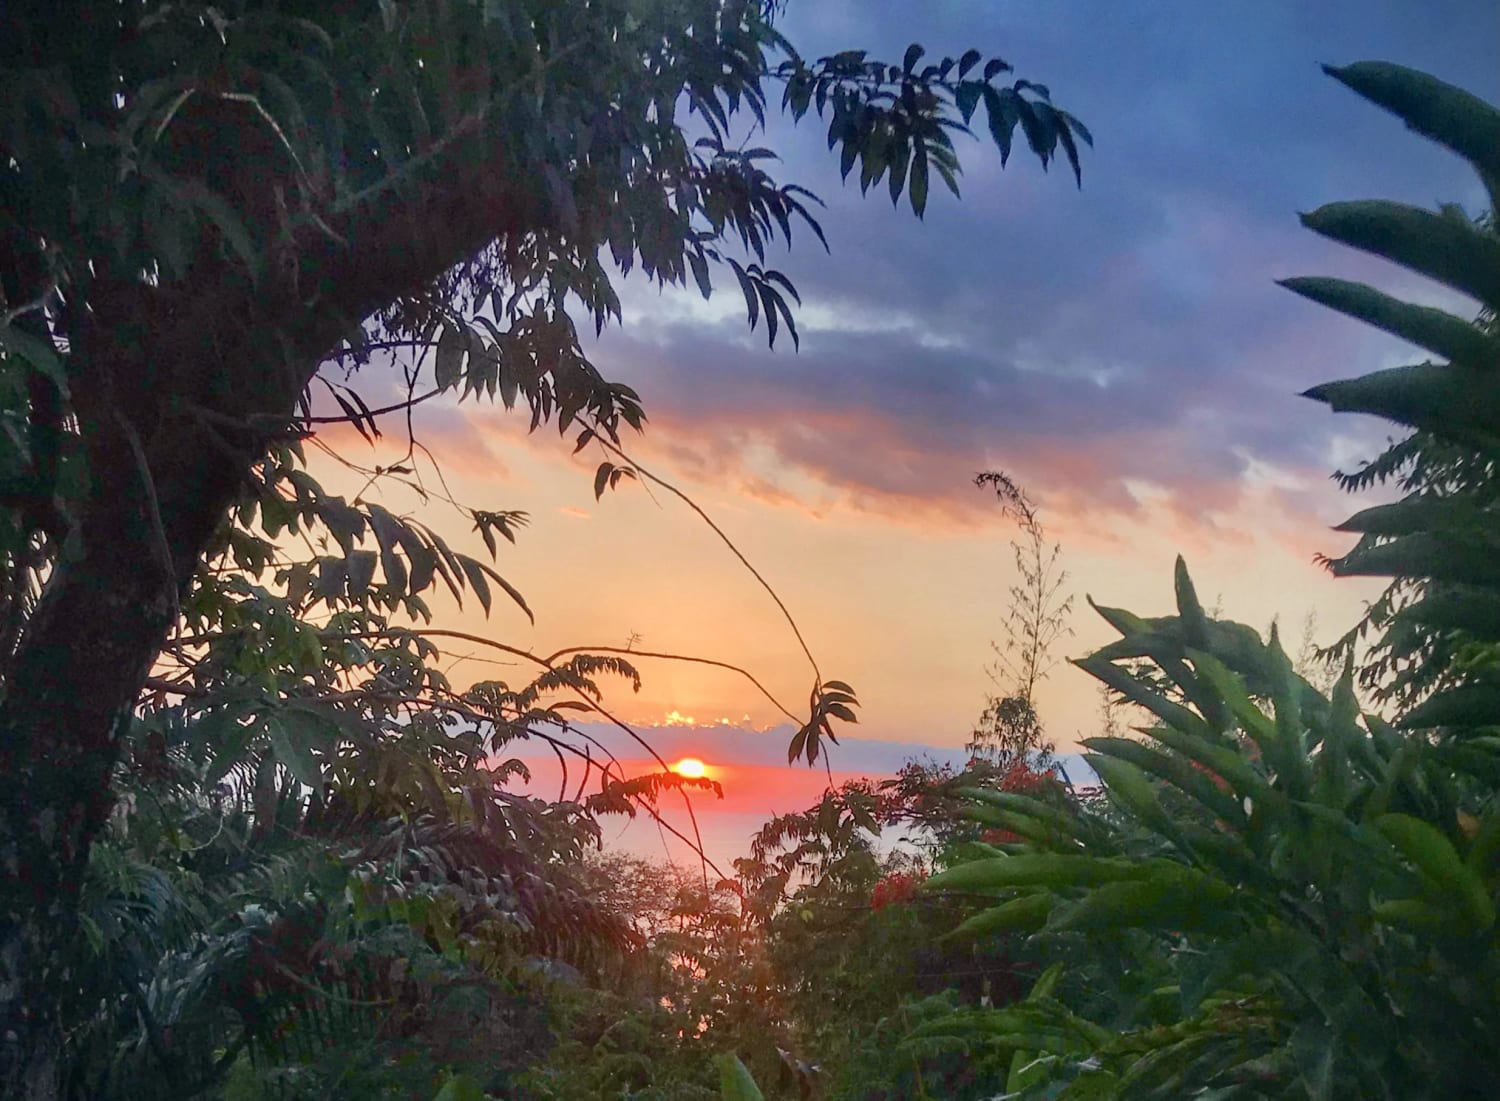 Sunset at Manuel Antonio, Costa Rica